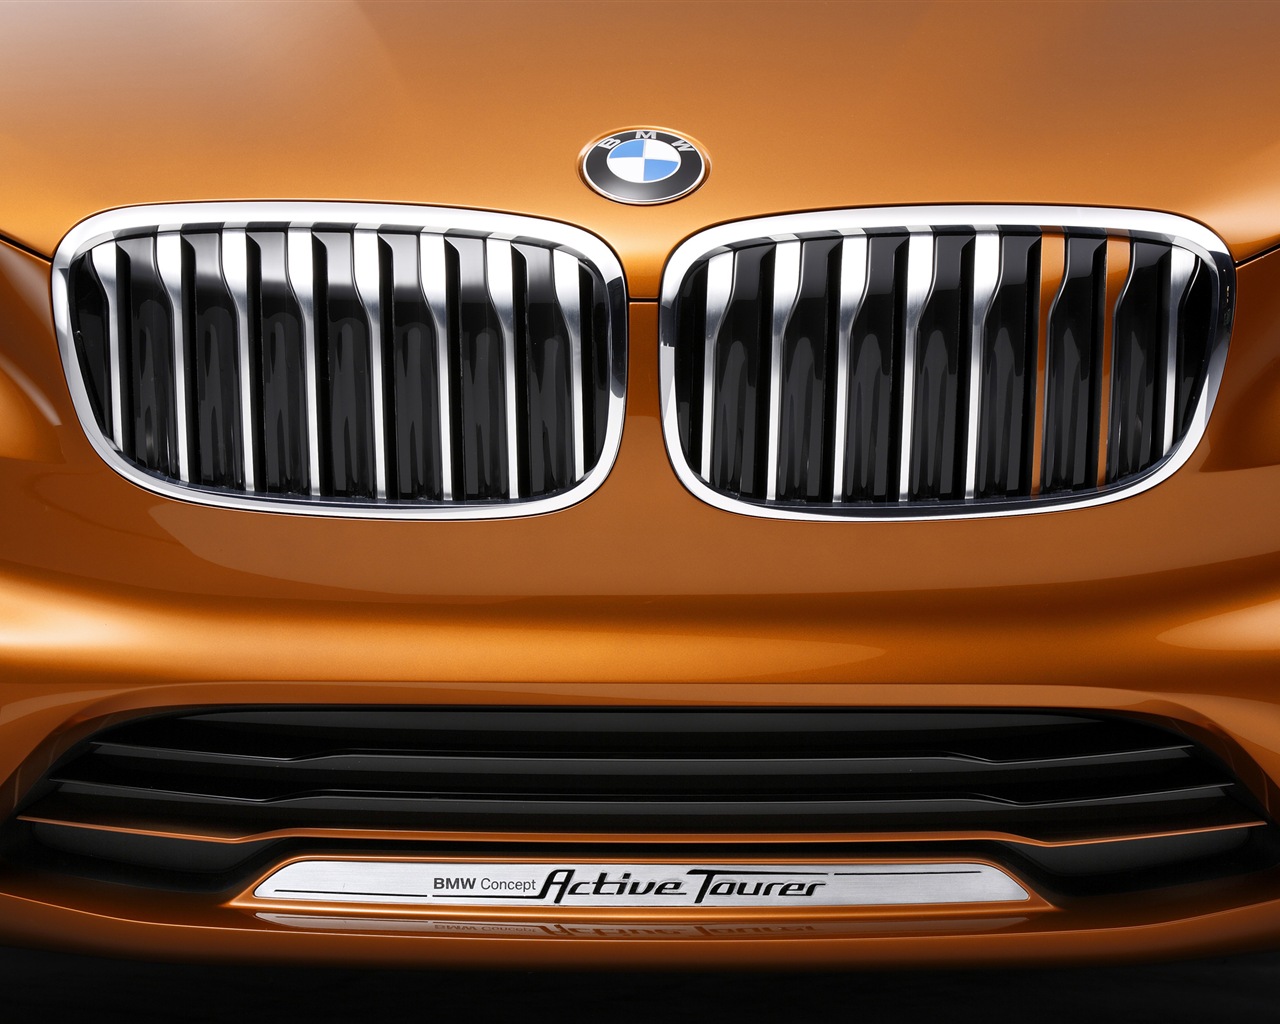 2013 BMW Concept Aktive Tourer HD Wallpaper #15 - 1280x1024